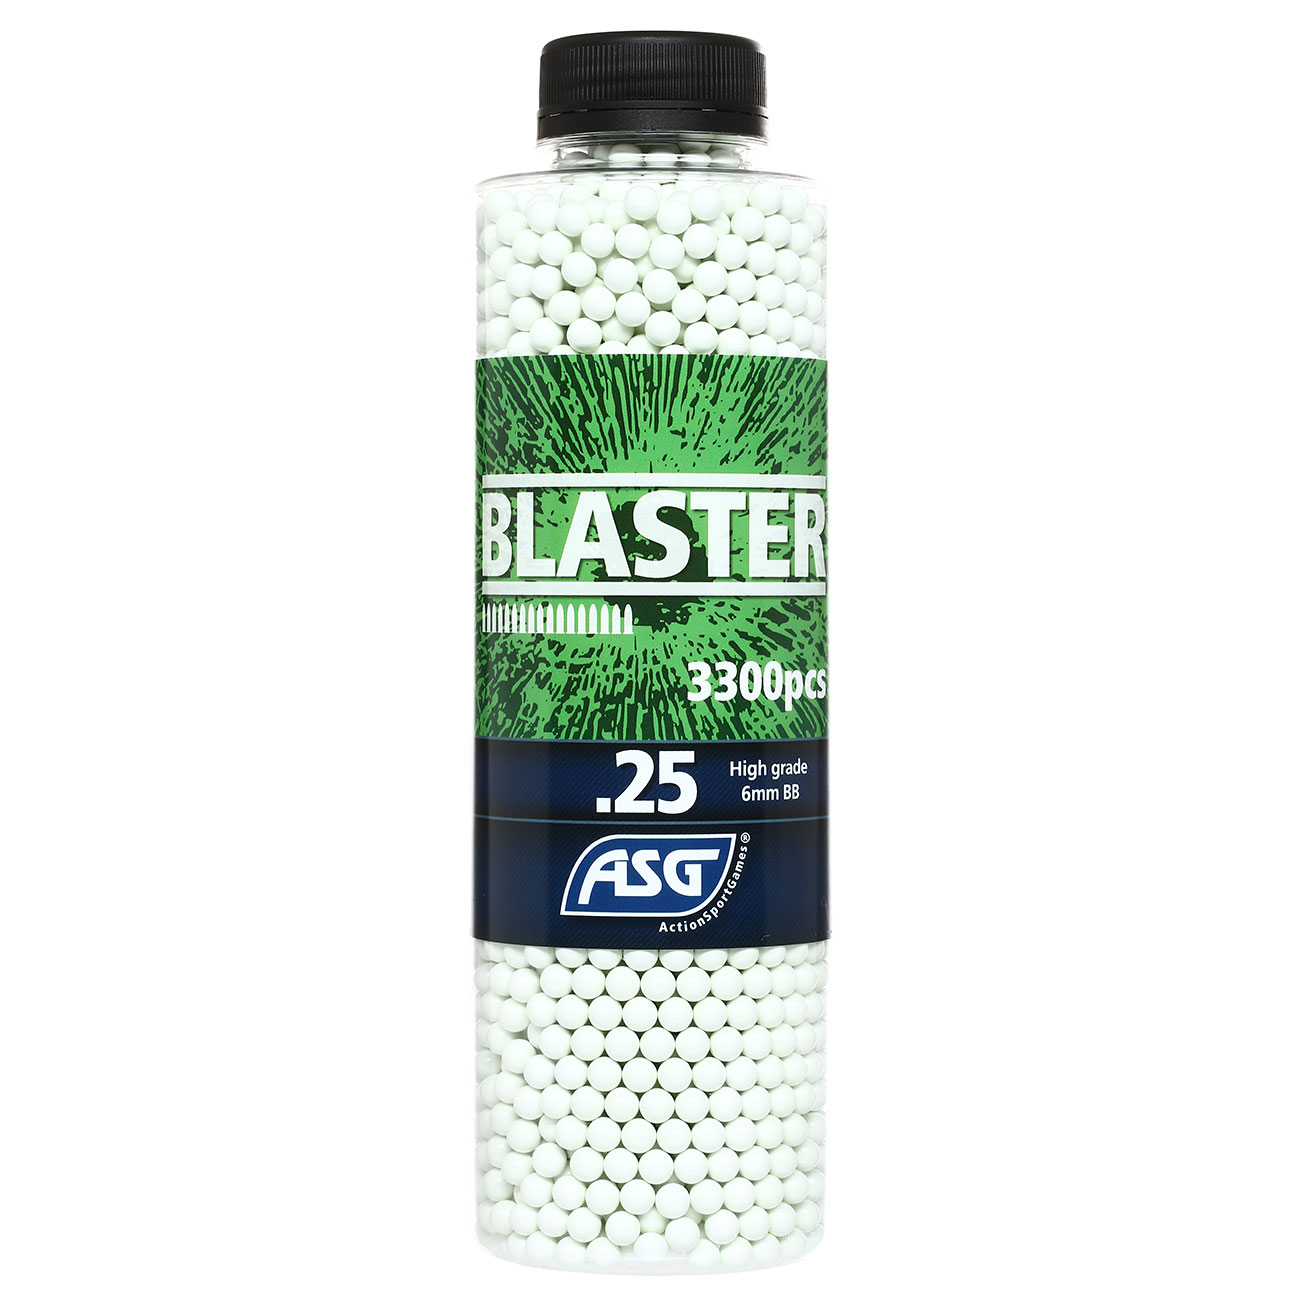 ASG Blaster High Grade BBs 0,25g 3.300er Flasche weiss